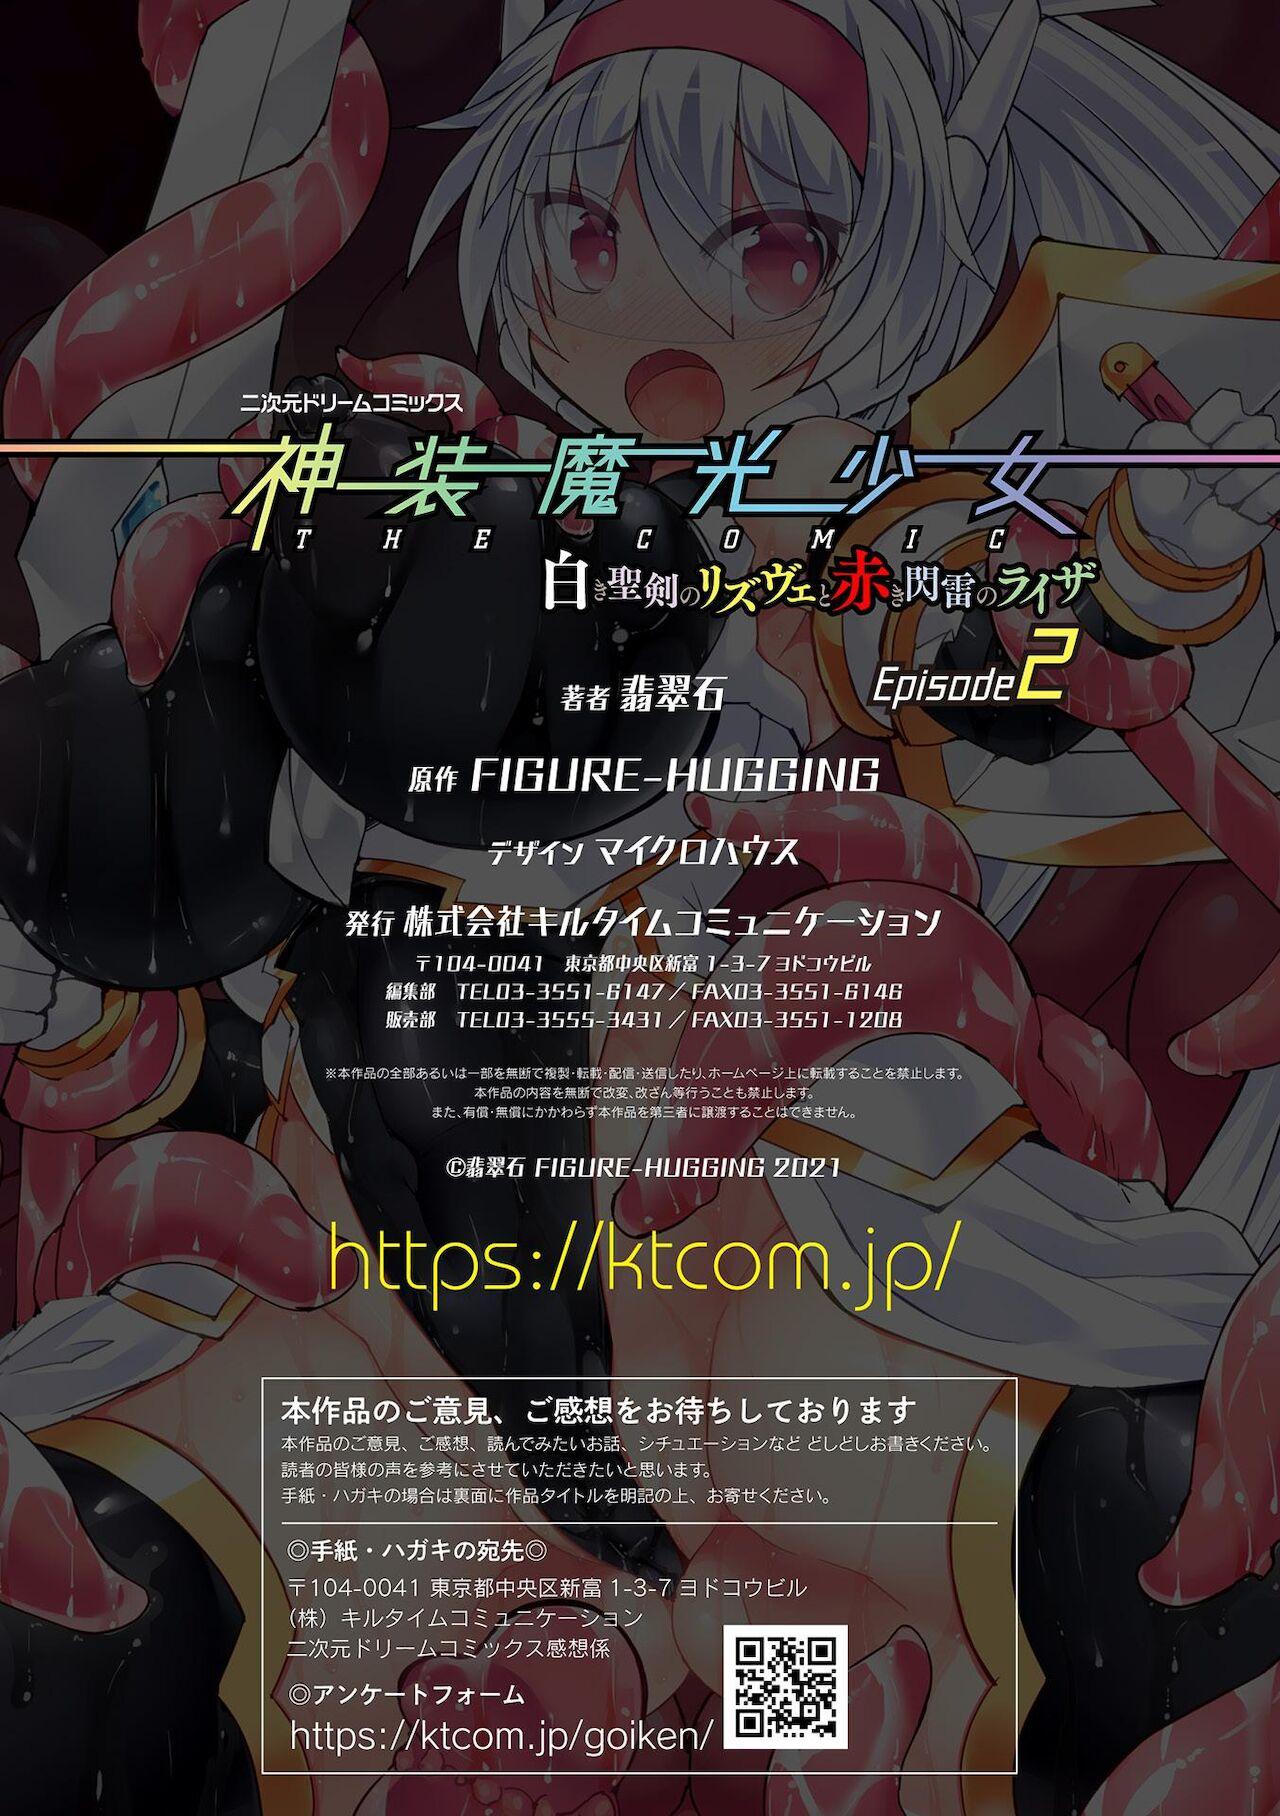 Shinsou Makou Shoujo THE COMIC Shiroki Seiken no Rizuve to Akaki Senrai no Raiza Episode 2 32